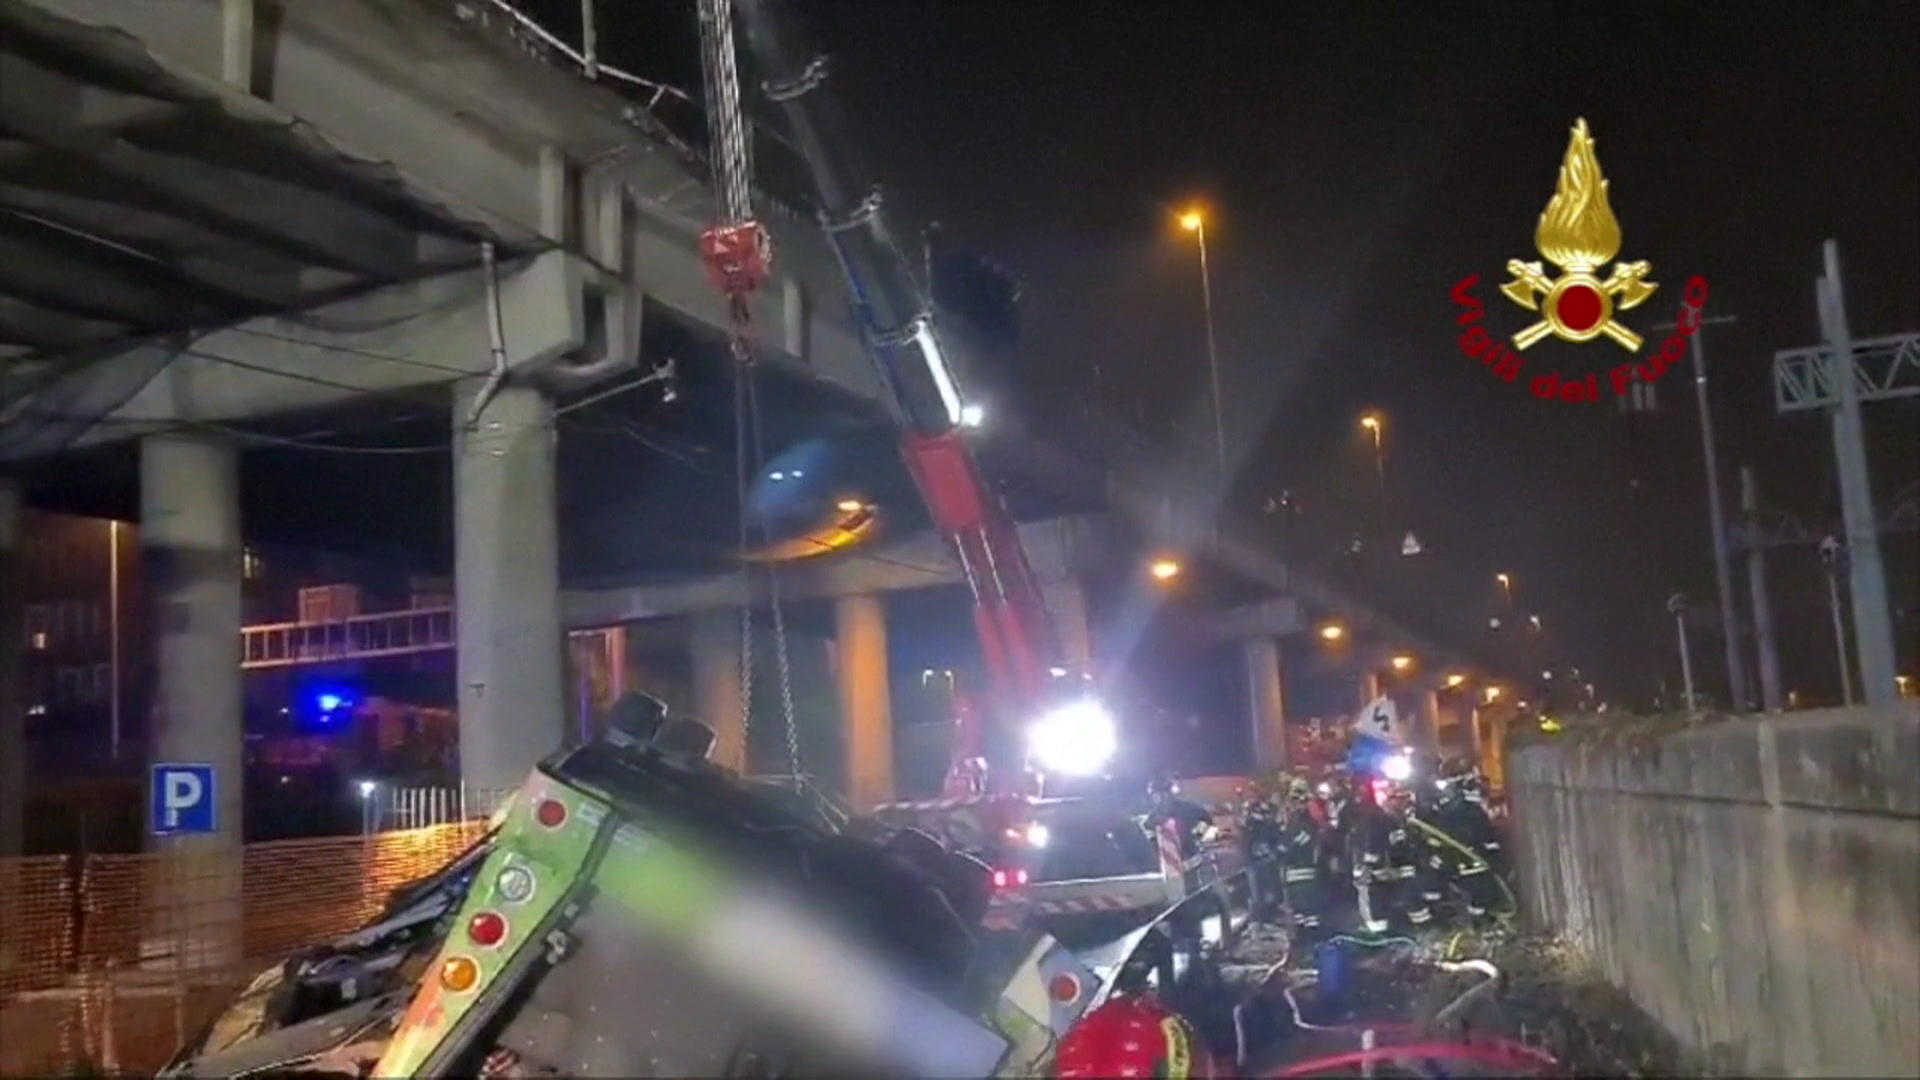 21 morti in un incidente d'autobus a Venezia...un tragico incidente!